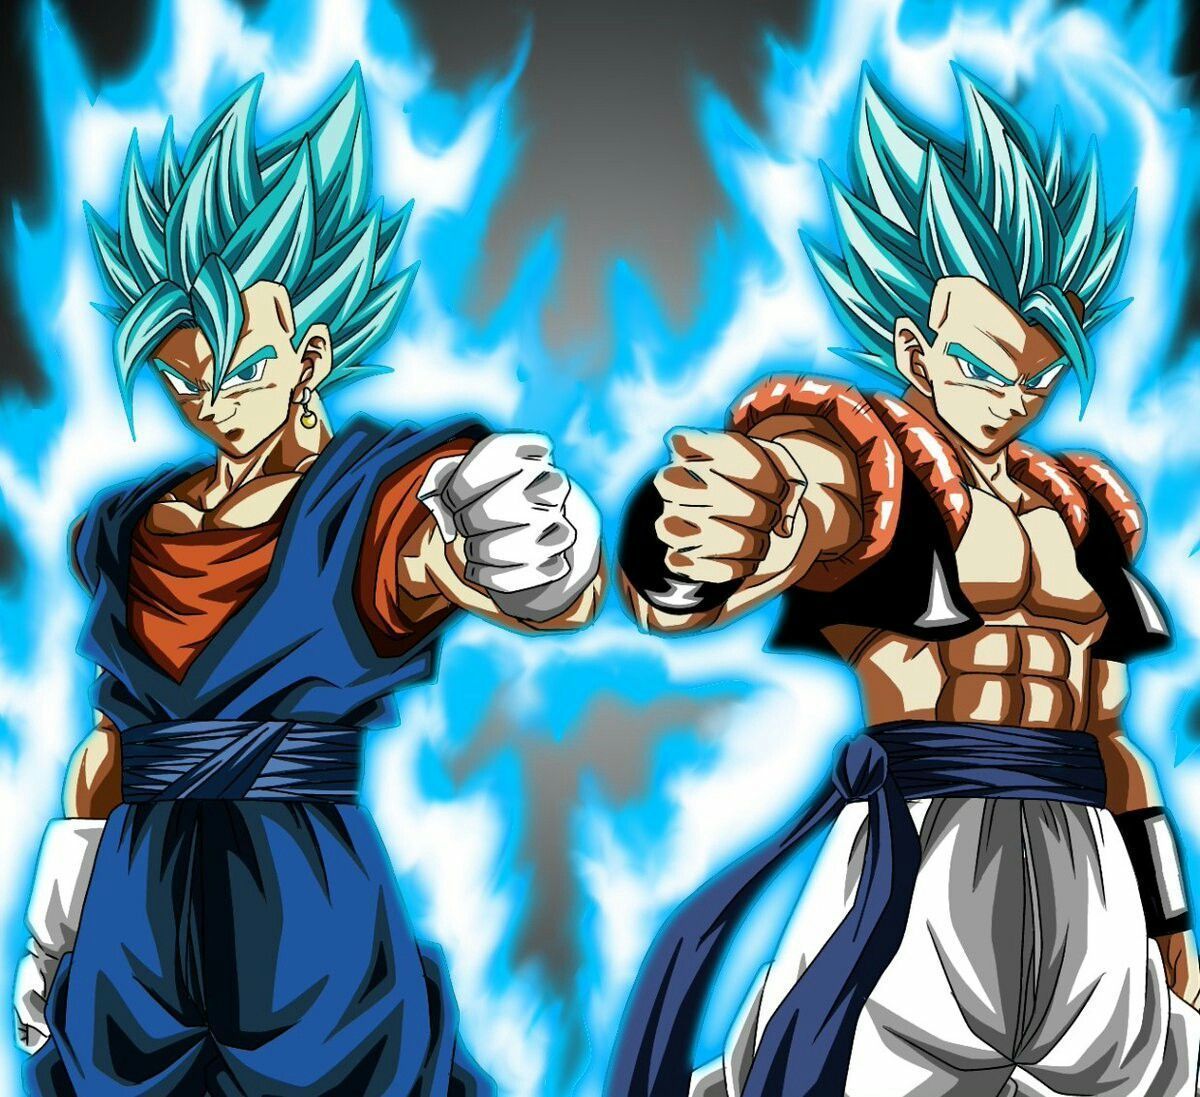 Gogeta blue and Vegito blue vs MUI Goku and LB Jiren